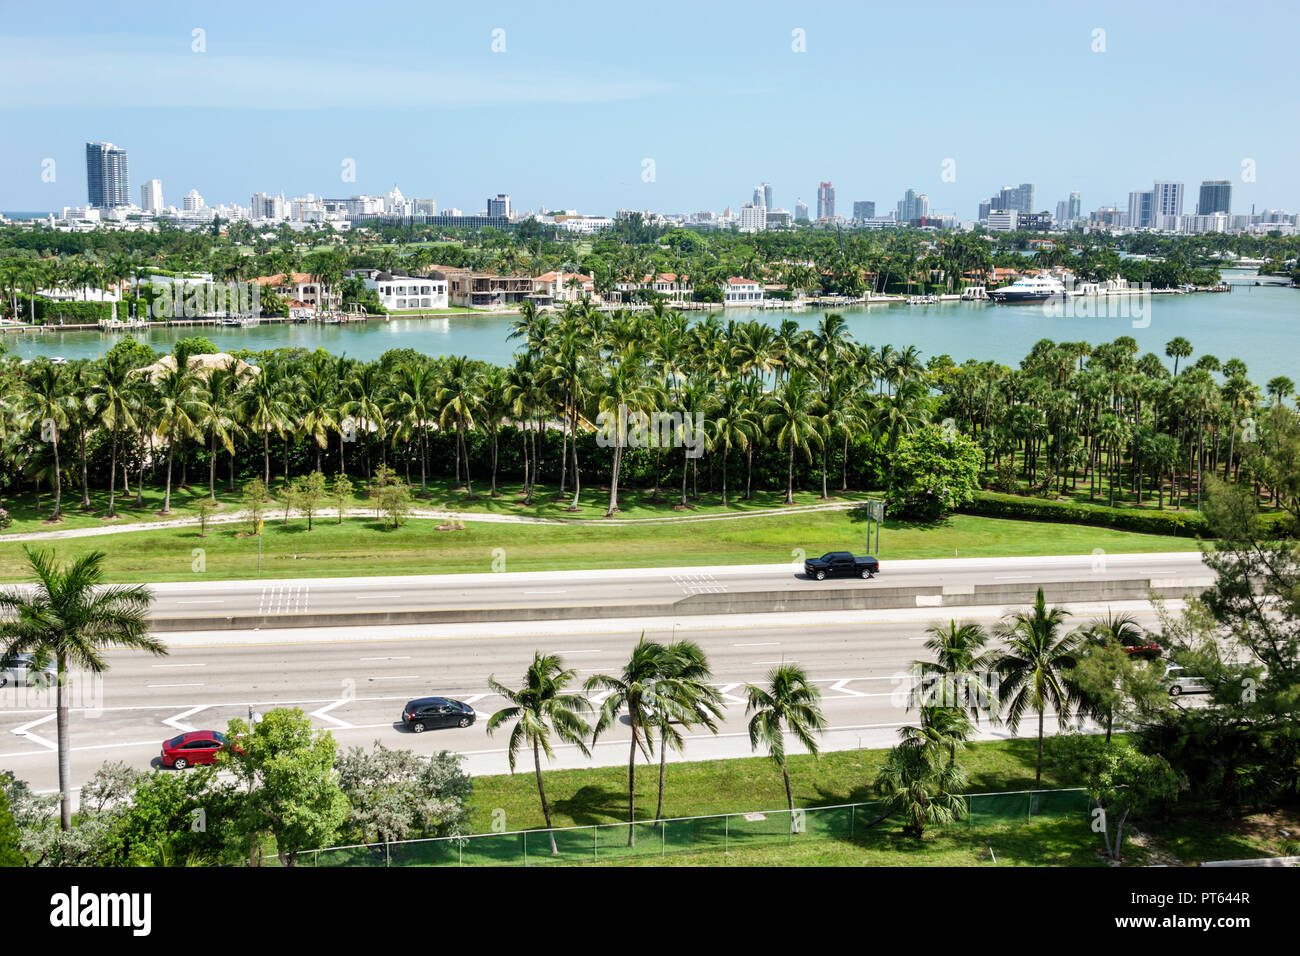 Miami Beach Florida, Biscayne Bay, case sul lungomare, skyline della città, palme, Julia Tuttle Causeway i-195 autostrada, FL180731251 Foto Stock